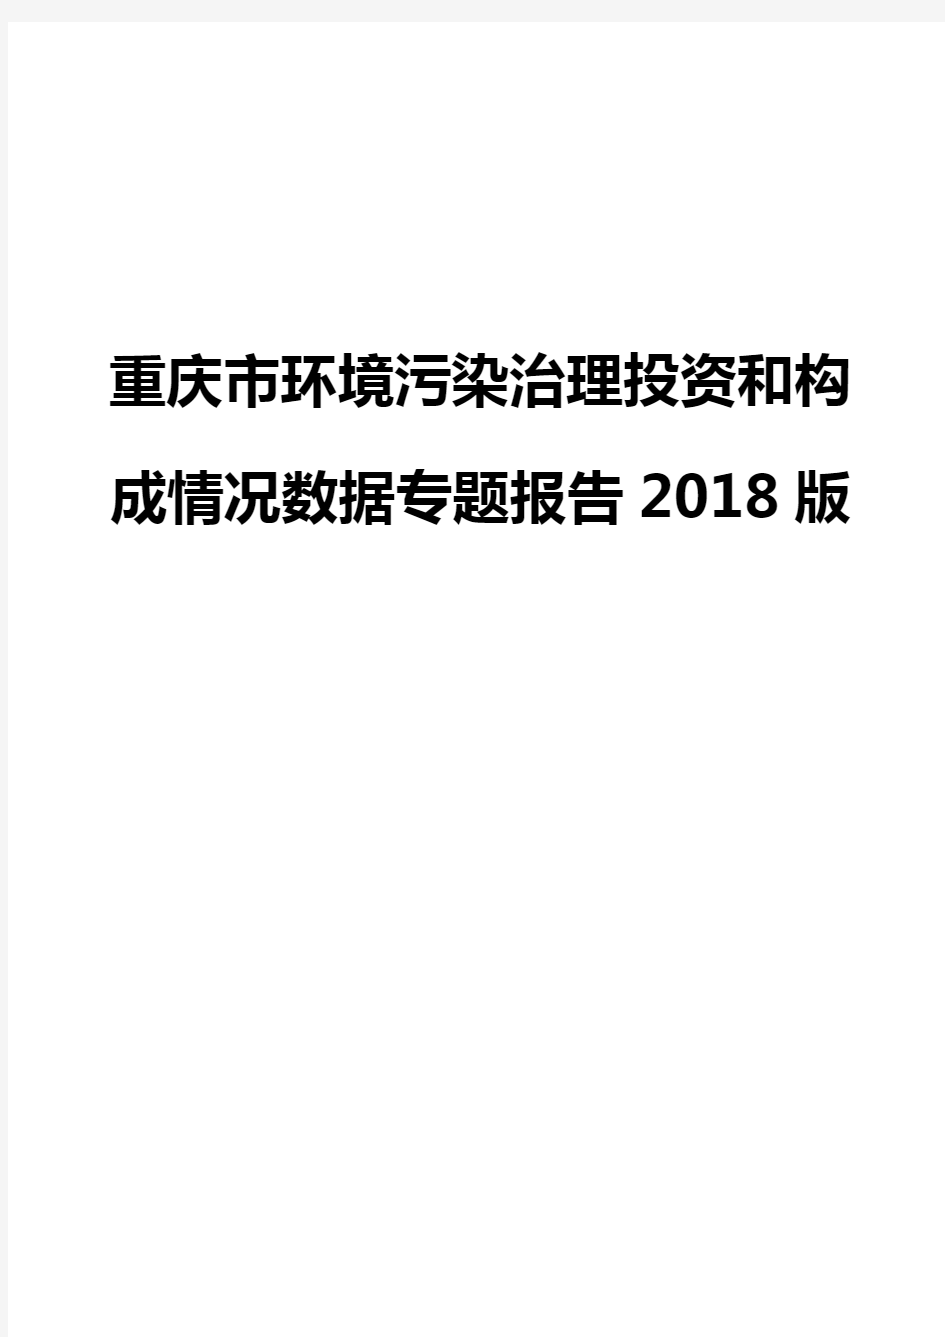 重庆市环境污染治理投资和构成情况数据专题报告2018版